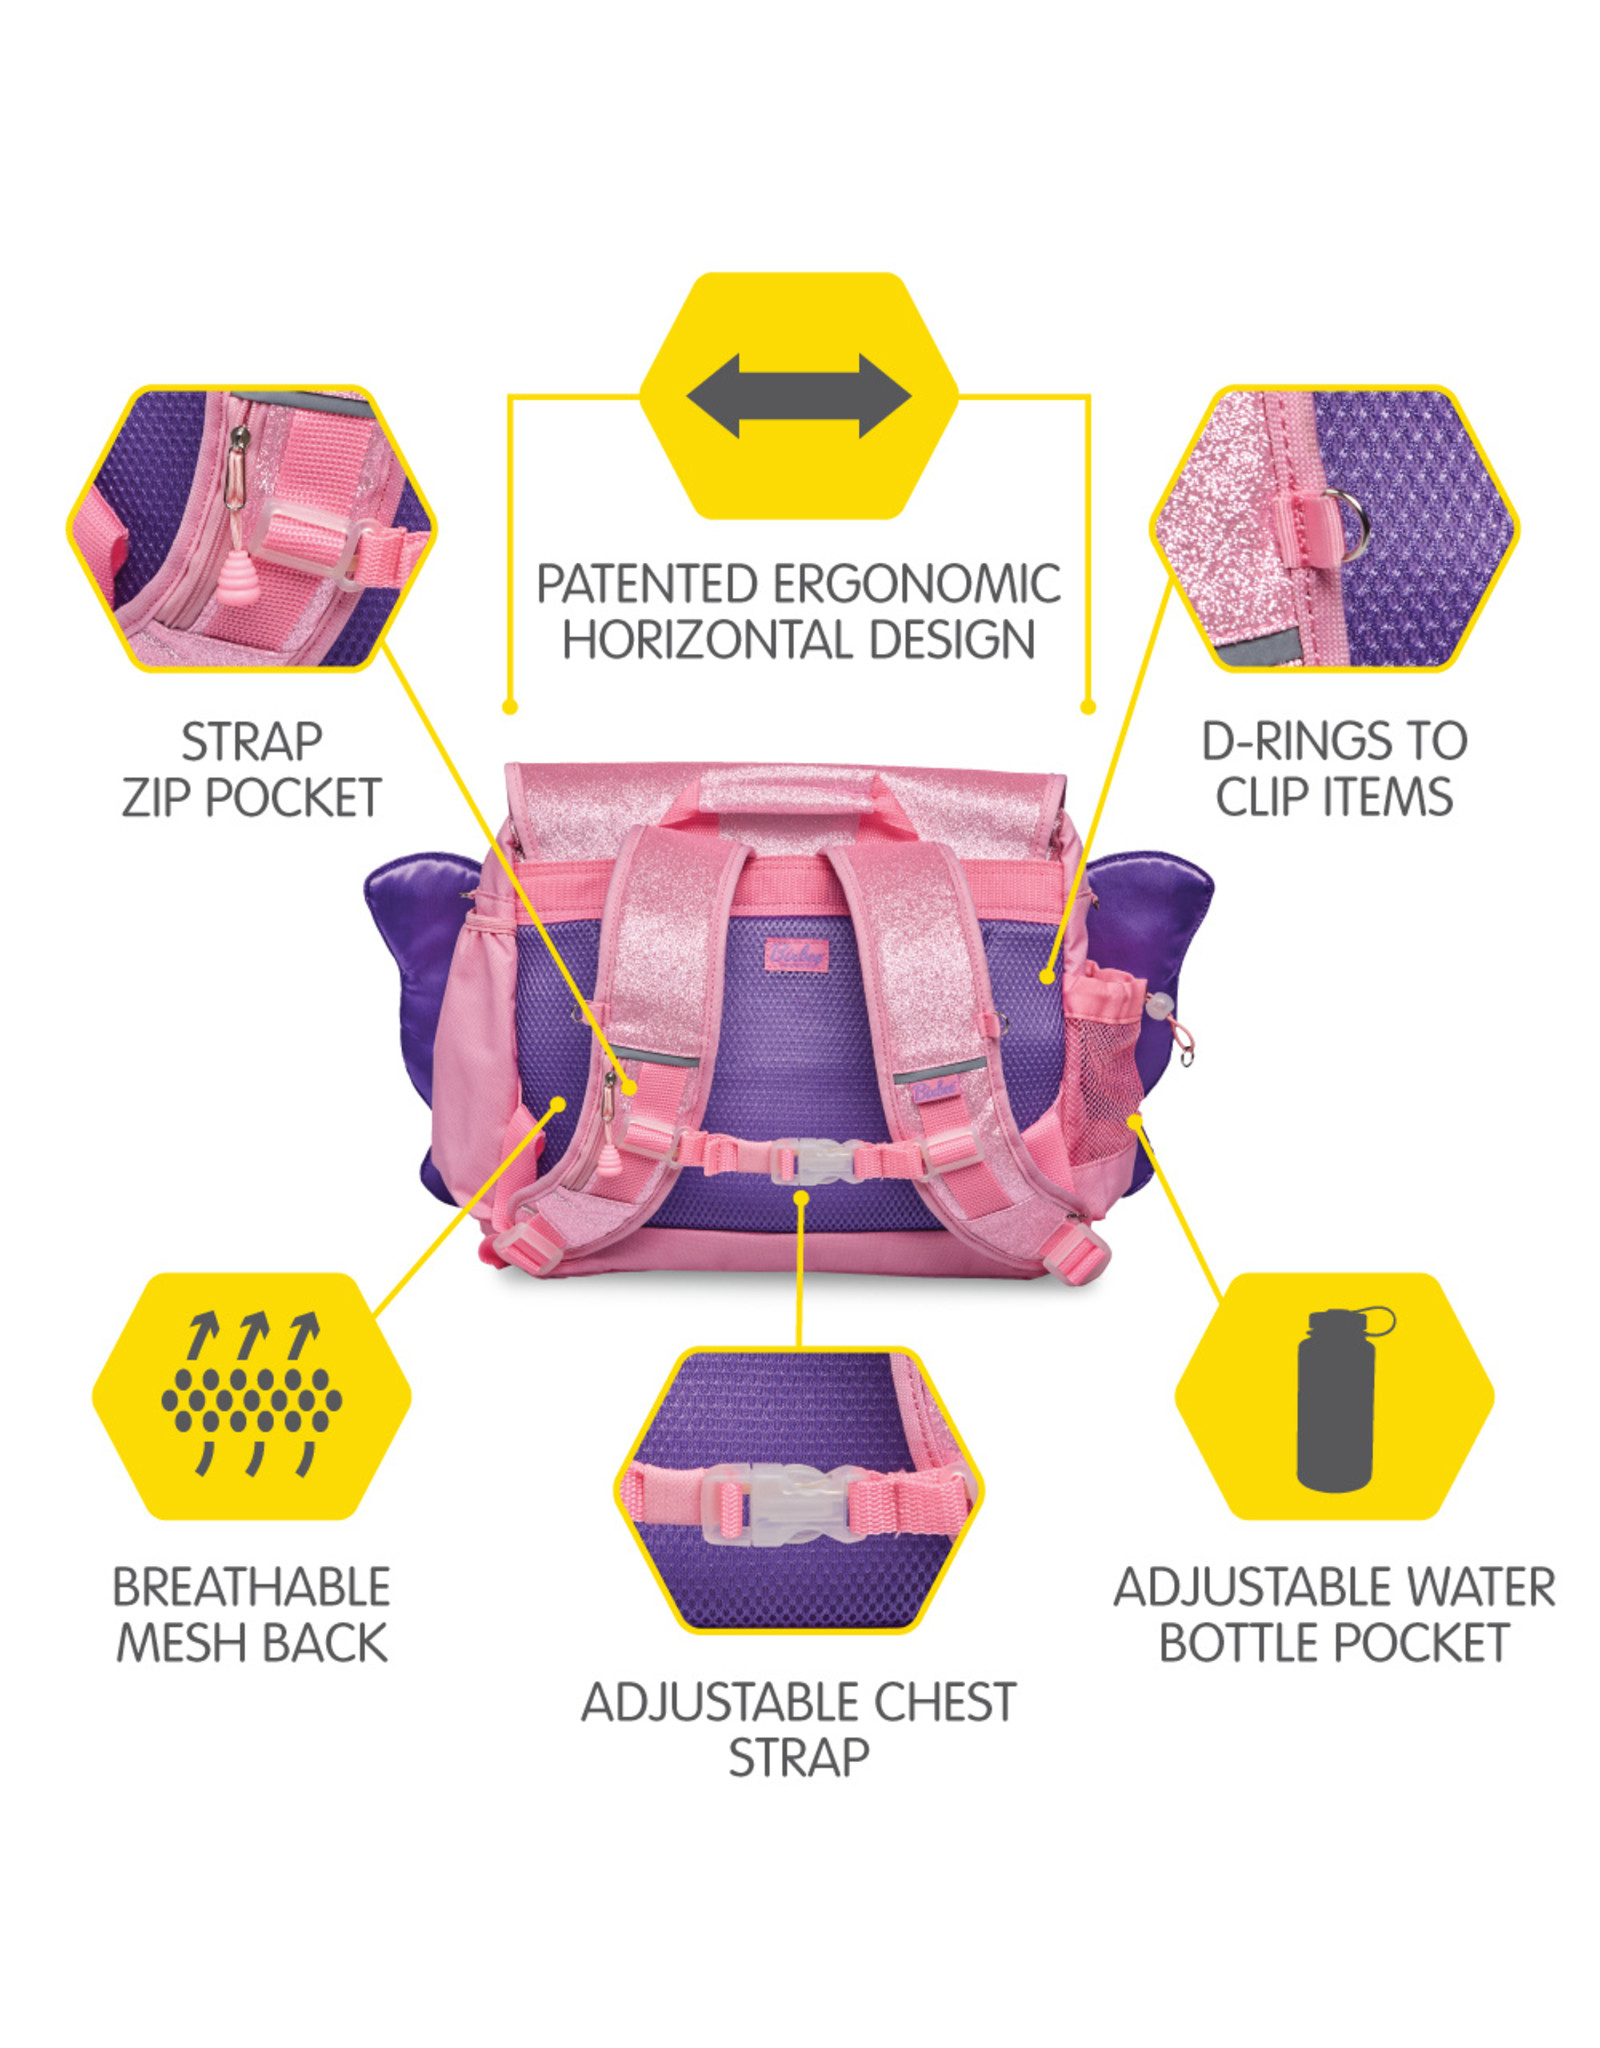 Bixbee Sparkalicious Pink Butterflyer Backpack (Medium)